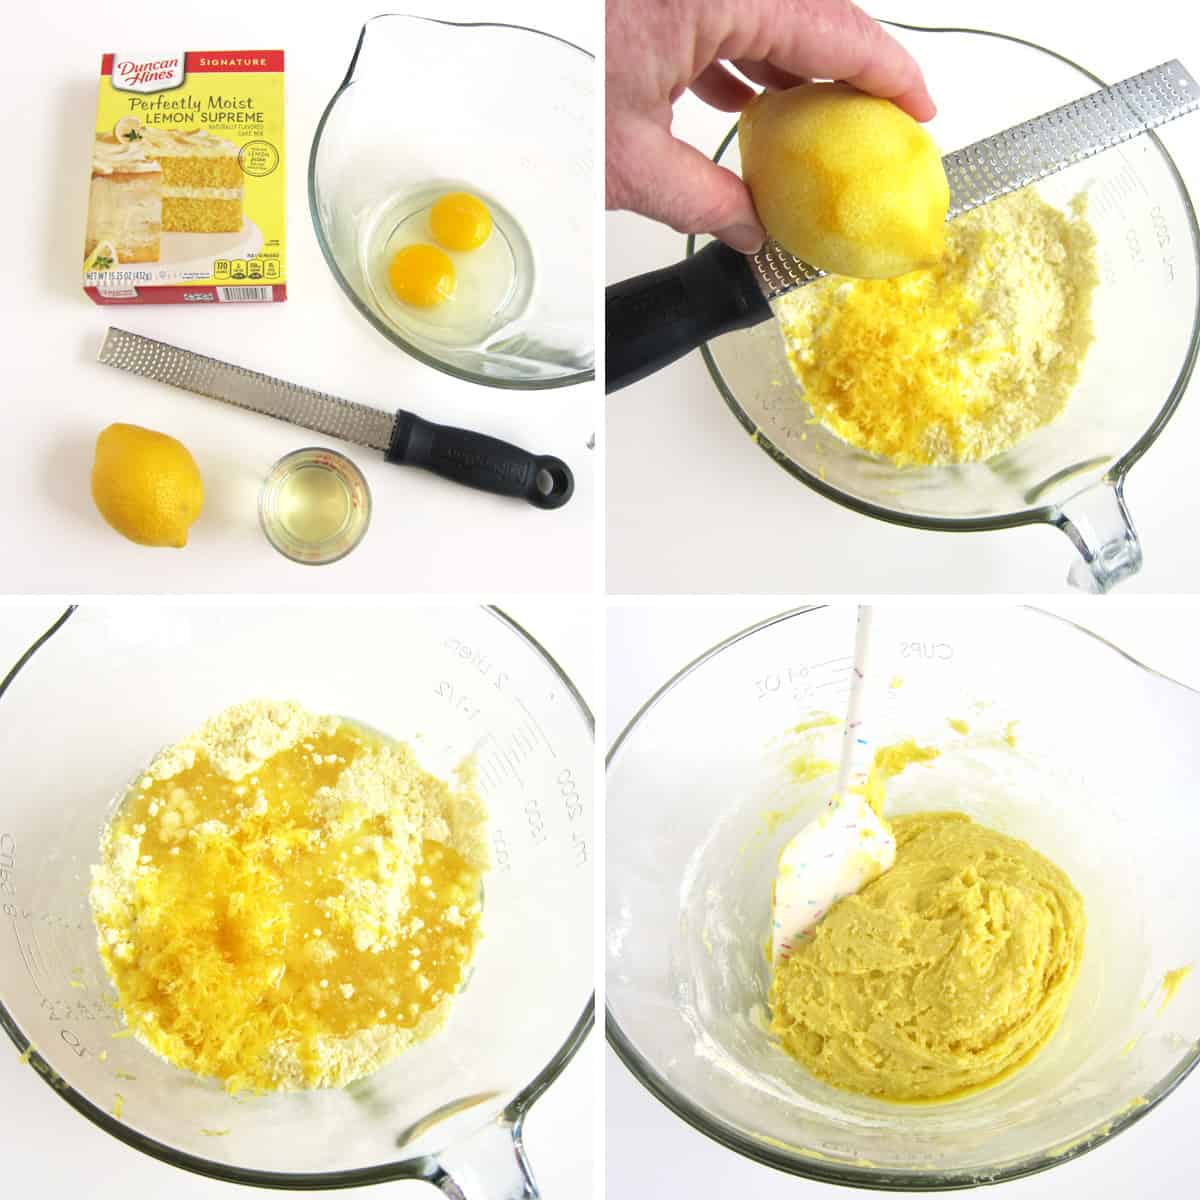 make lemon cake mix cookie dough with lemon juice, lemon zest, oil, and eggs